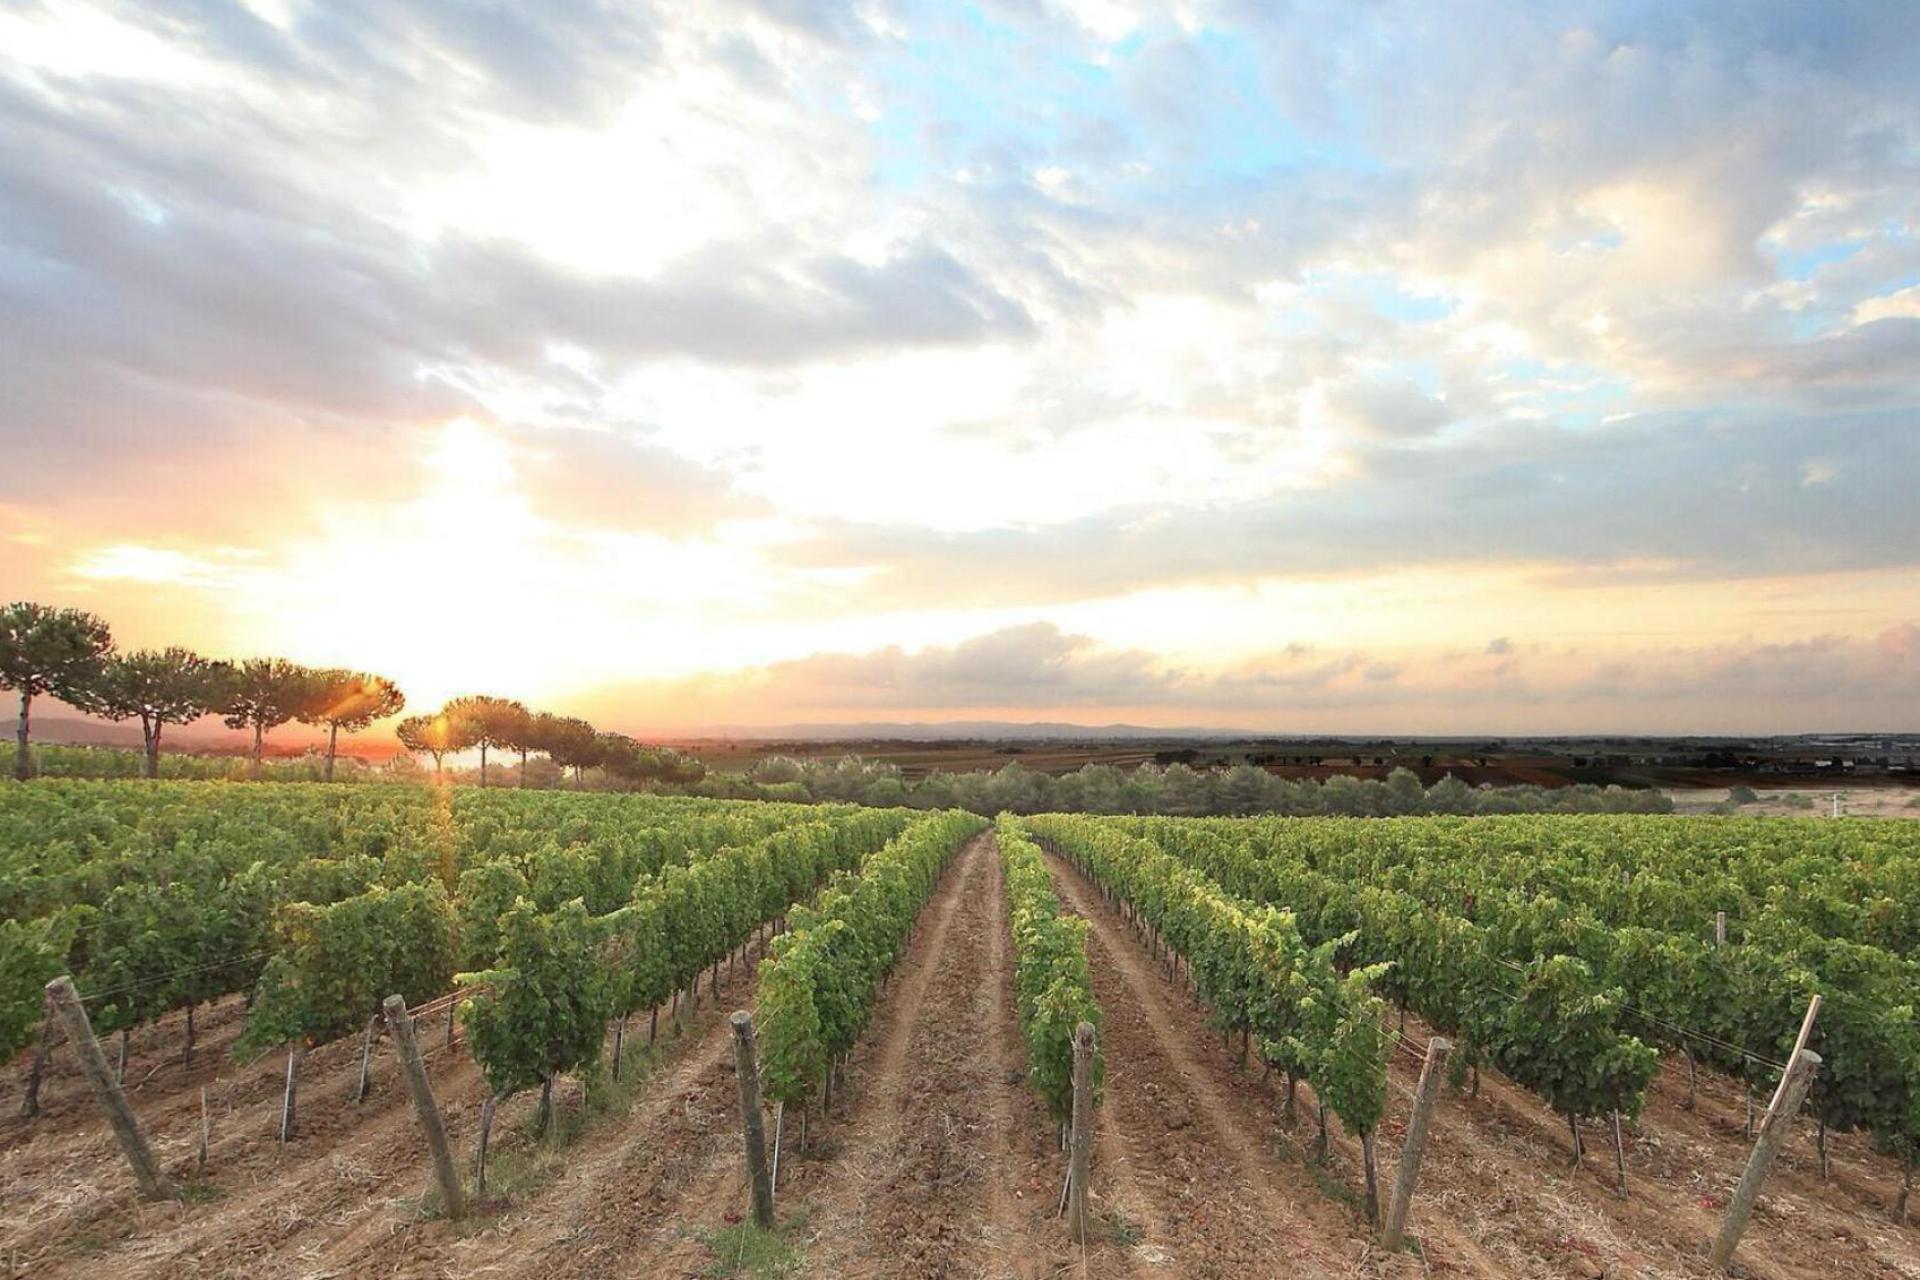 Agriturismo Toscane Glamping Toscane op een wijnboerderij 2 km van zee